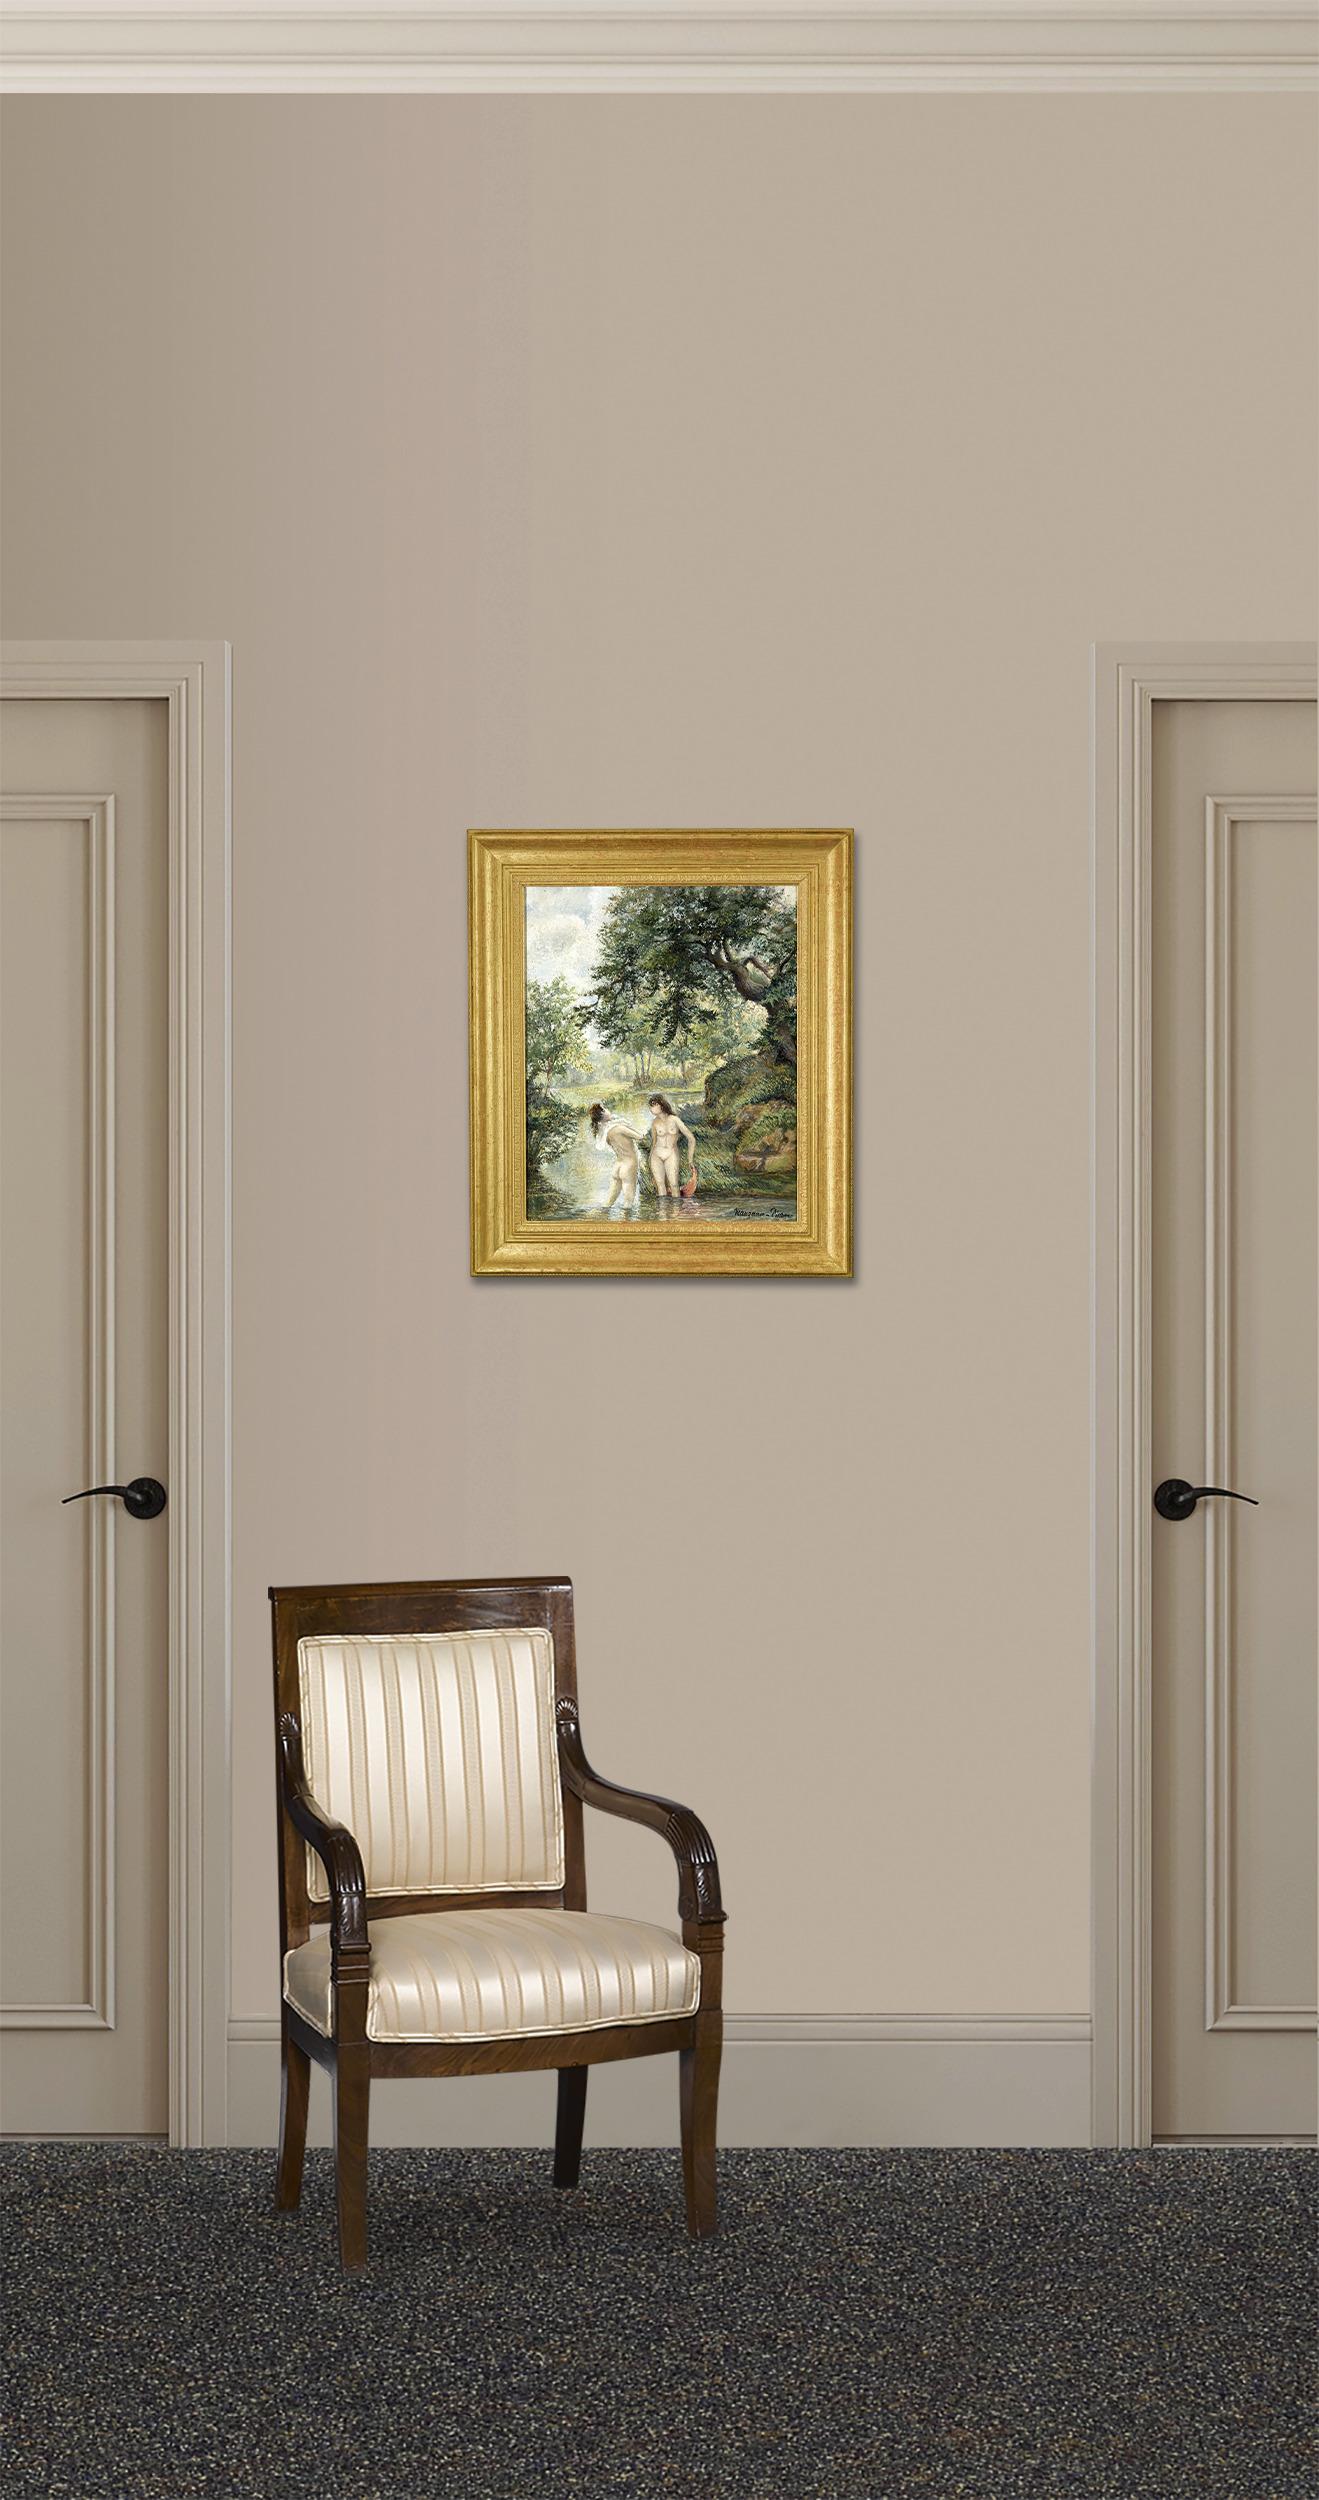 In dieser ruhigen Szene des französischen Künstlers Georges Manzana Pissarro sind die Merkmale des impressionistischen Stils deutlich zu erkennen. Manzana, der Sohn des großen Impressionisten Camille Pissarro, hat sein Handwerk von seinem Vater